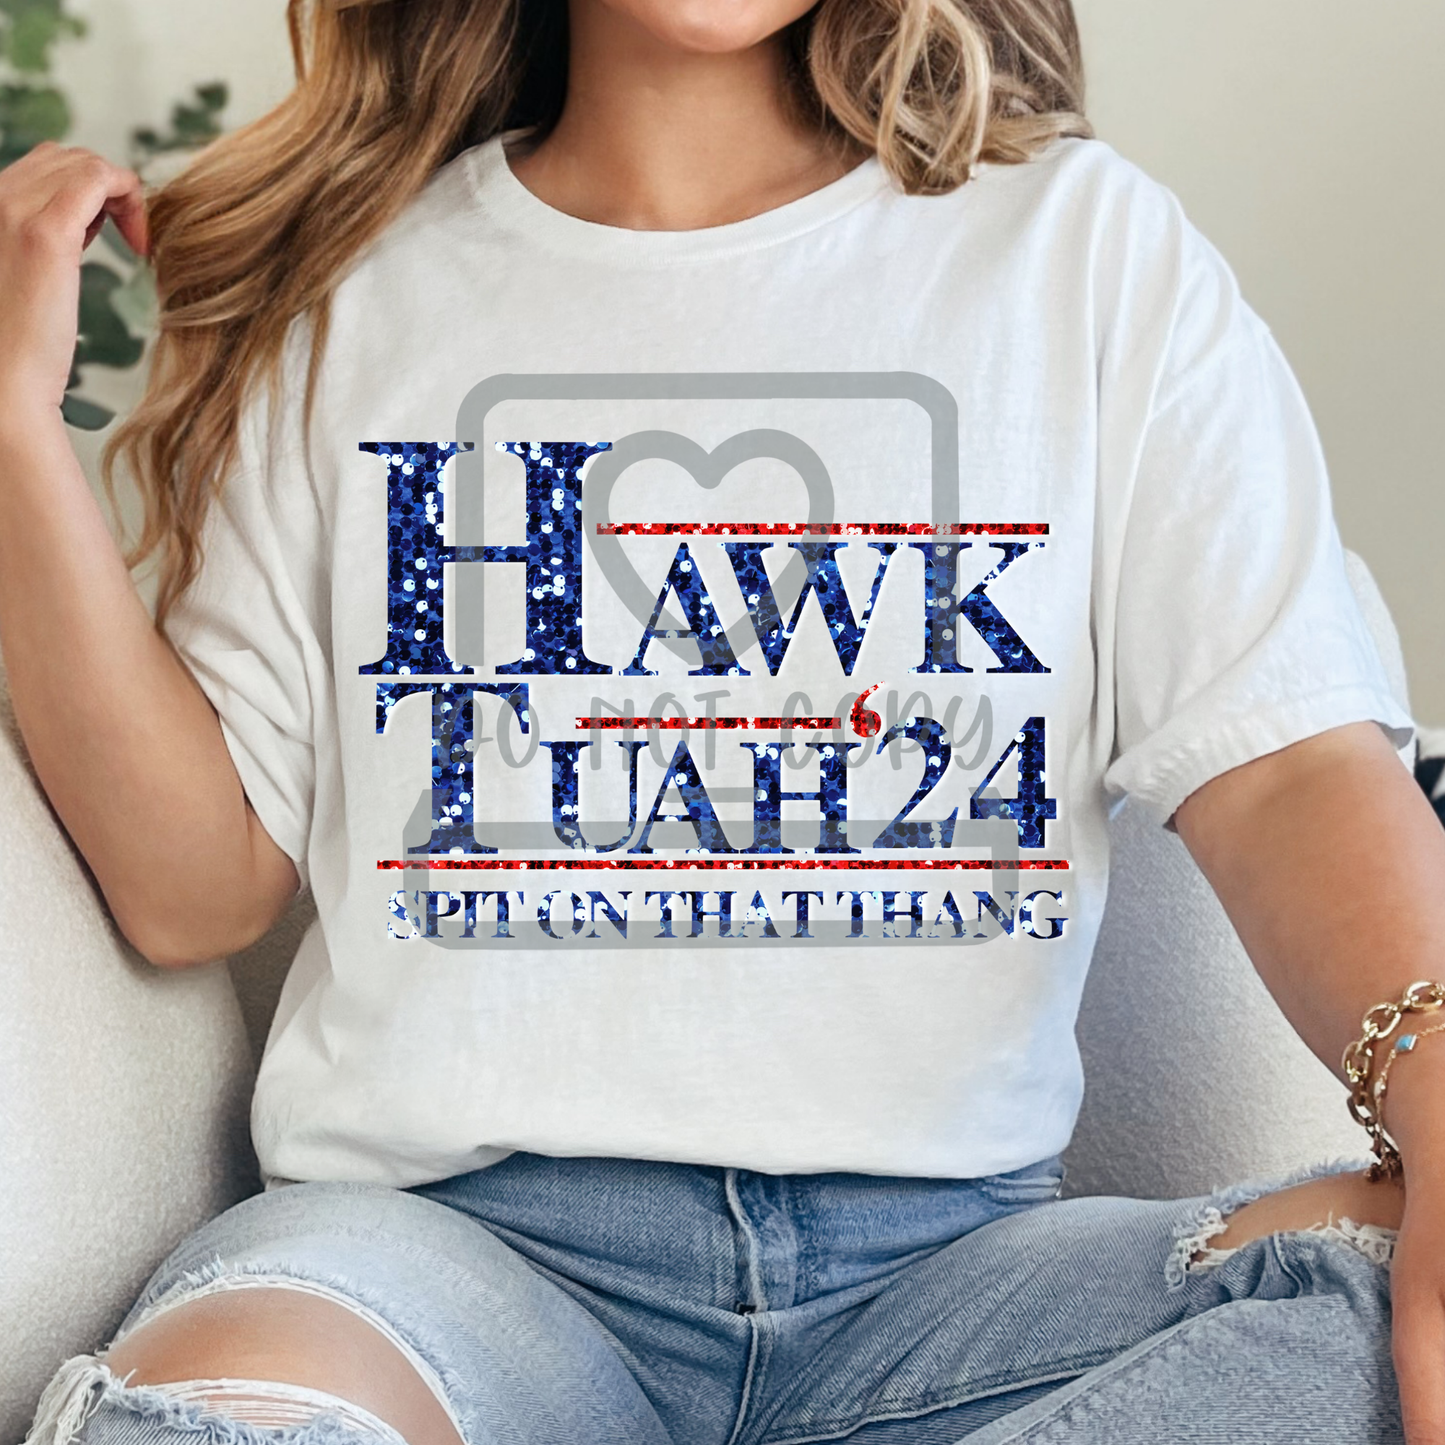 Hawk Tuah 24